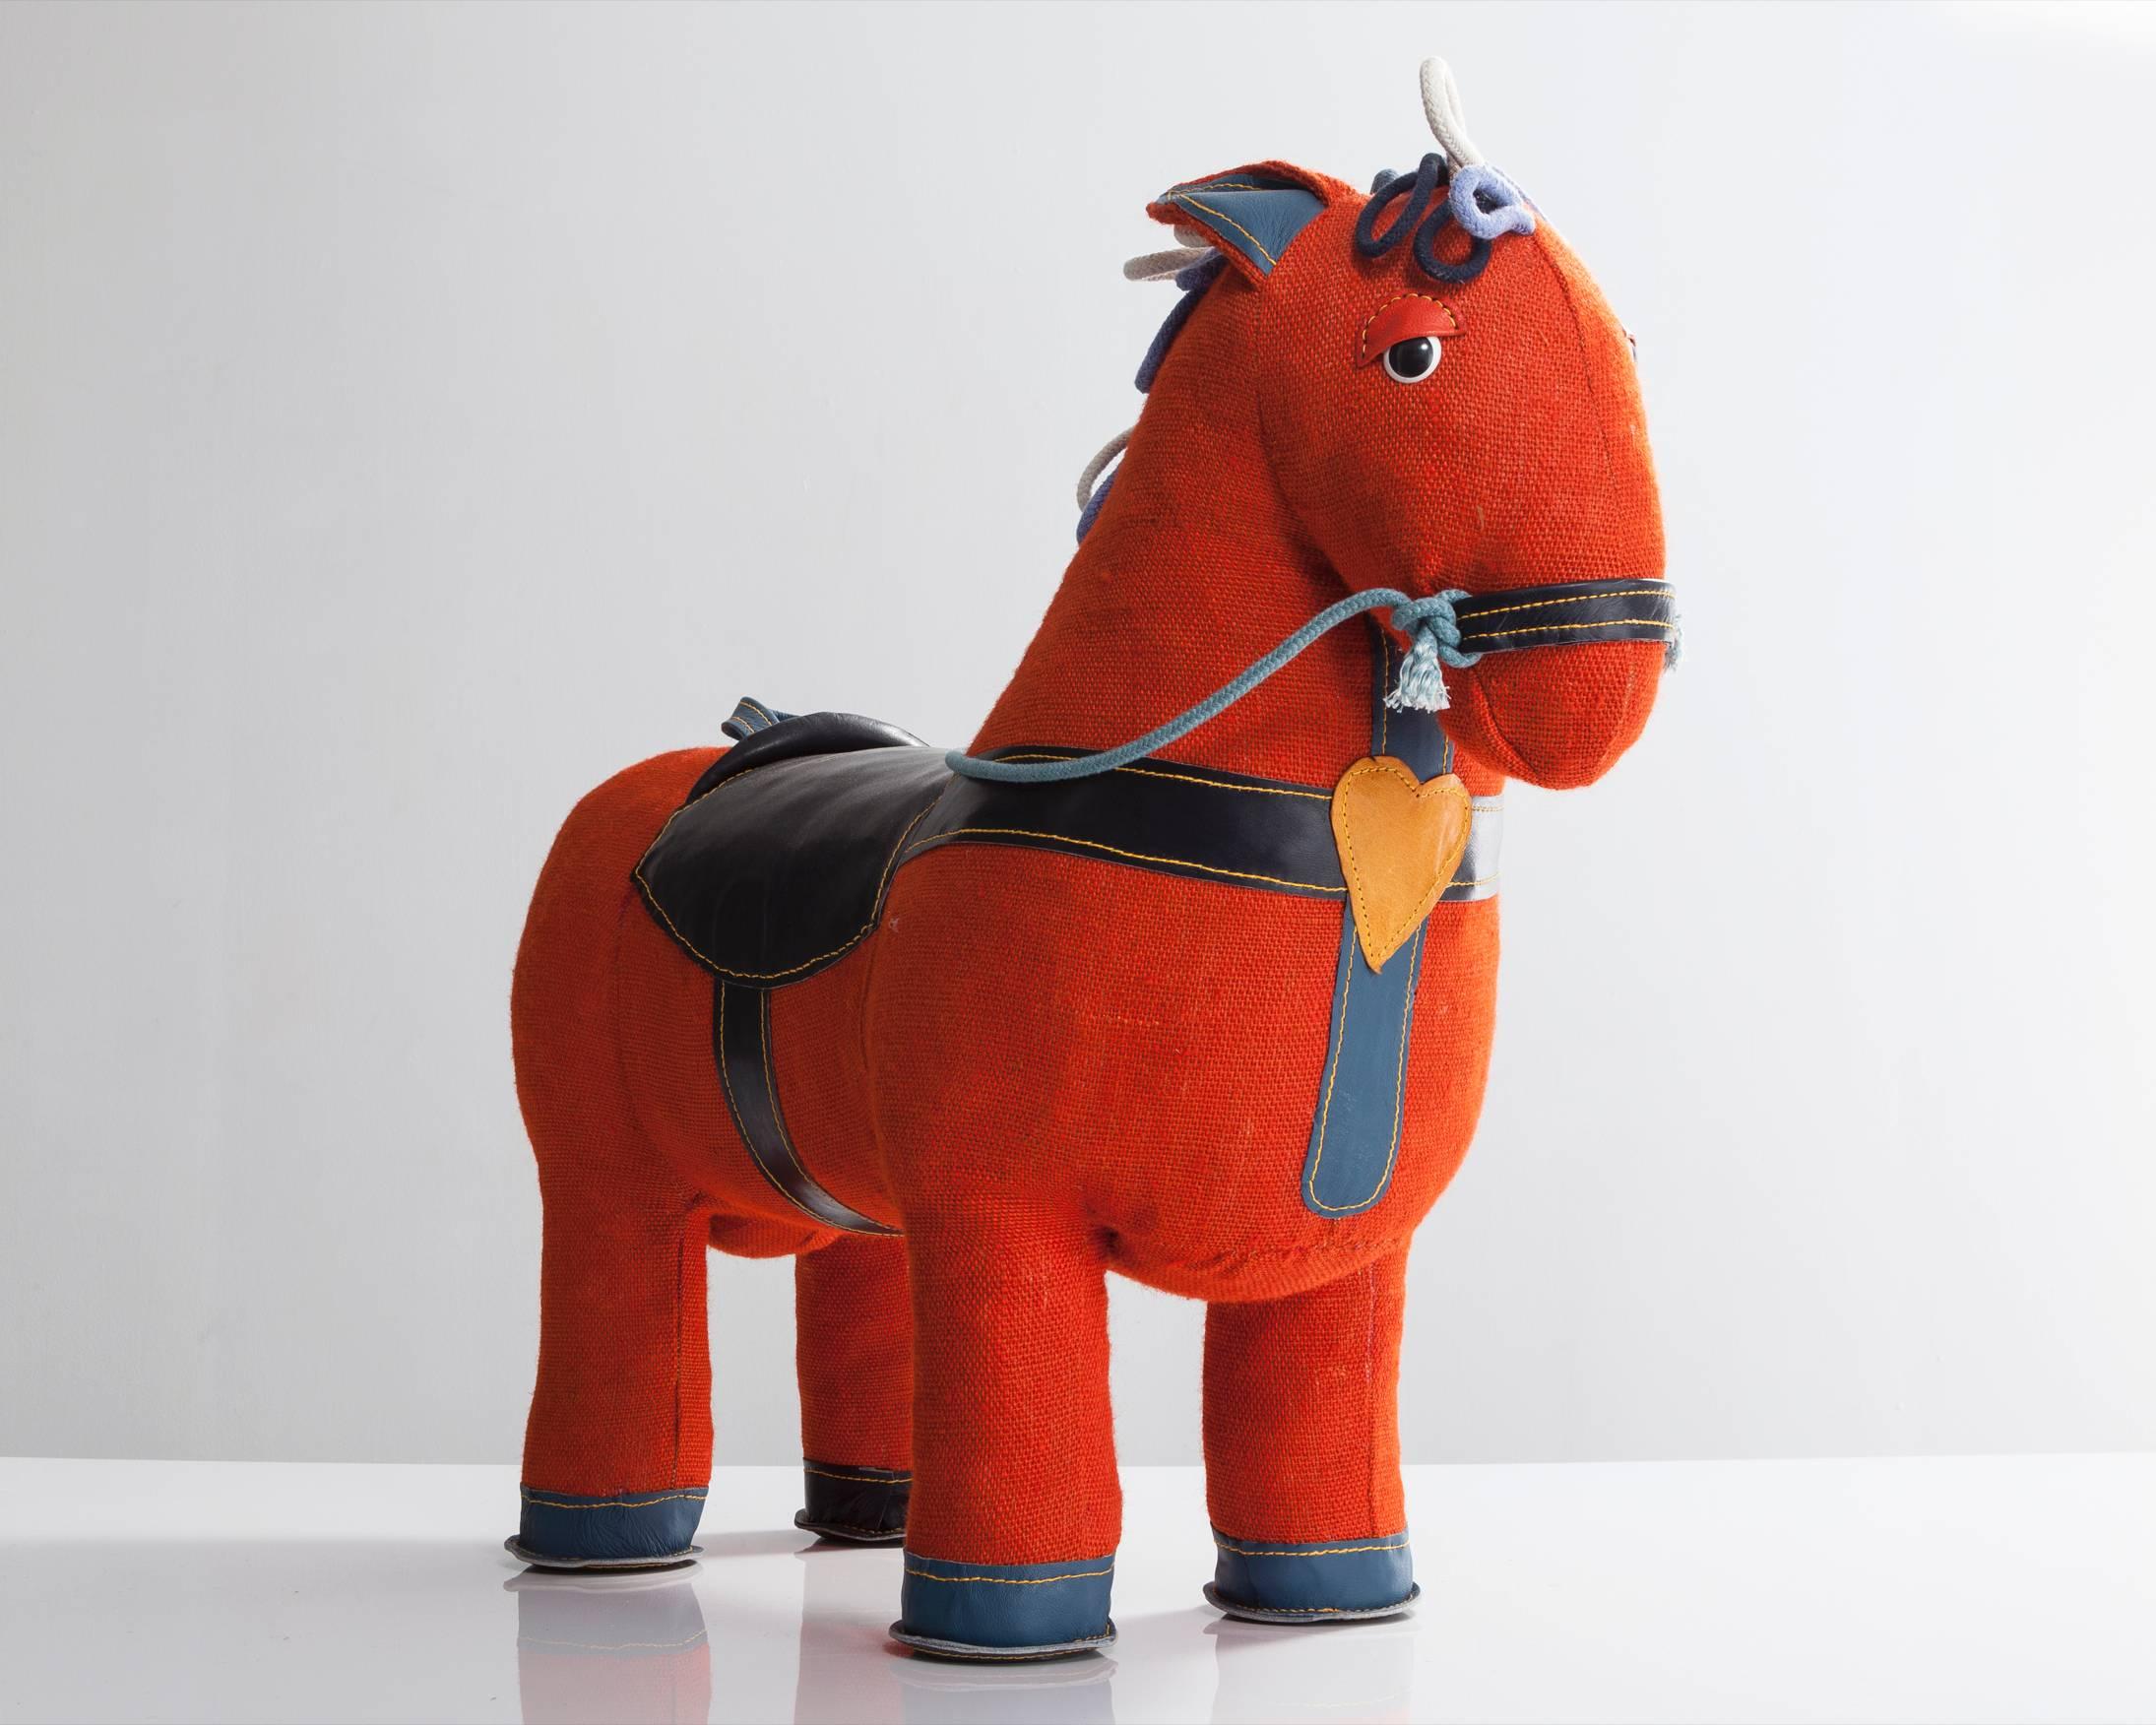 Therapeutisches Spielzeug-Zauberpferd aus orangefarbener Jute mit schwarzer Lederverzierung. Entworfen und hergestellt von Renate Müller, Deutschland, 2015.